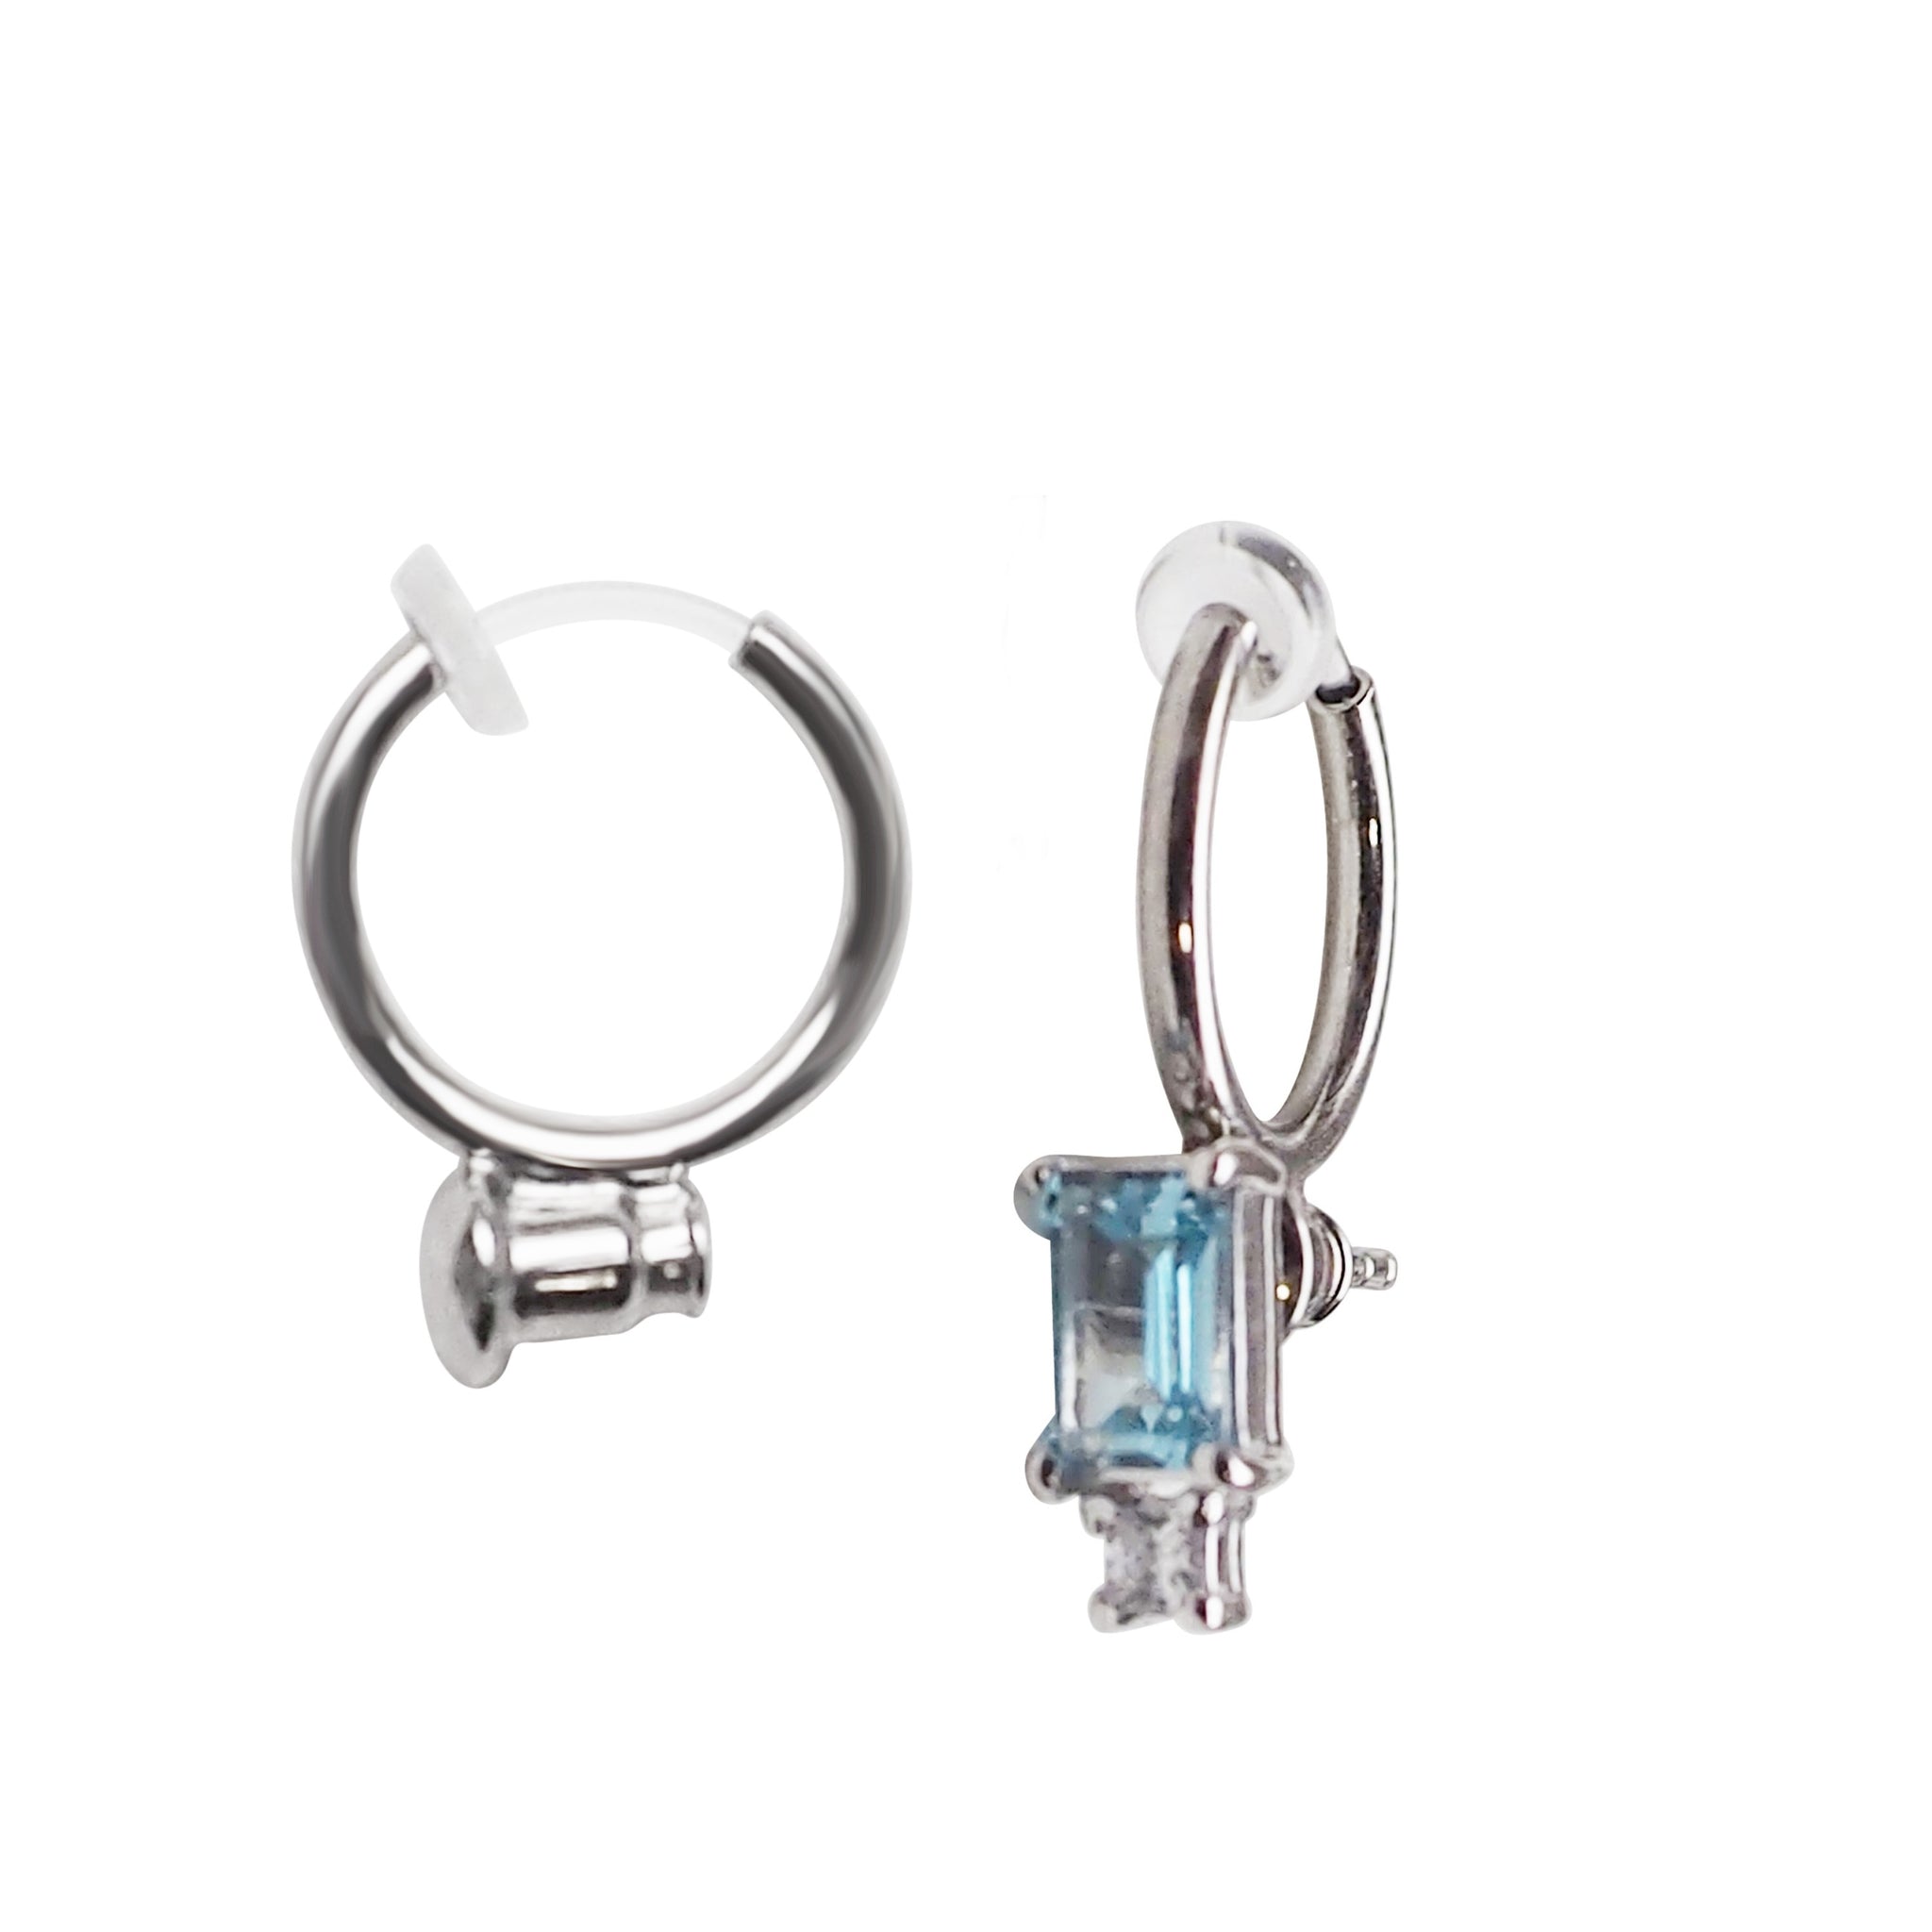 8pcs Earring Converters Pierced To Clip Earring Findings Clip On Earring  Backs | eBay